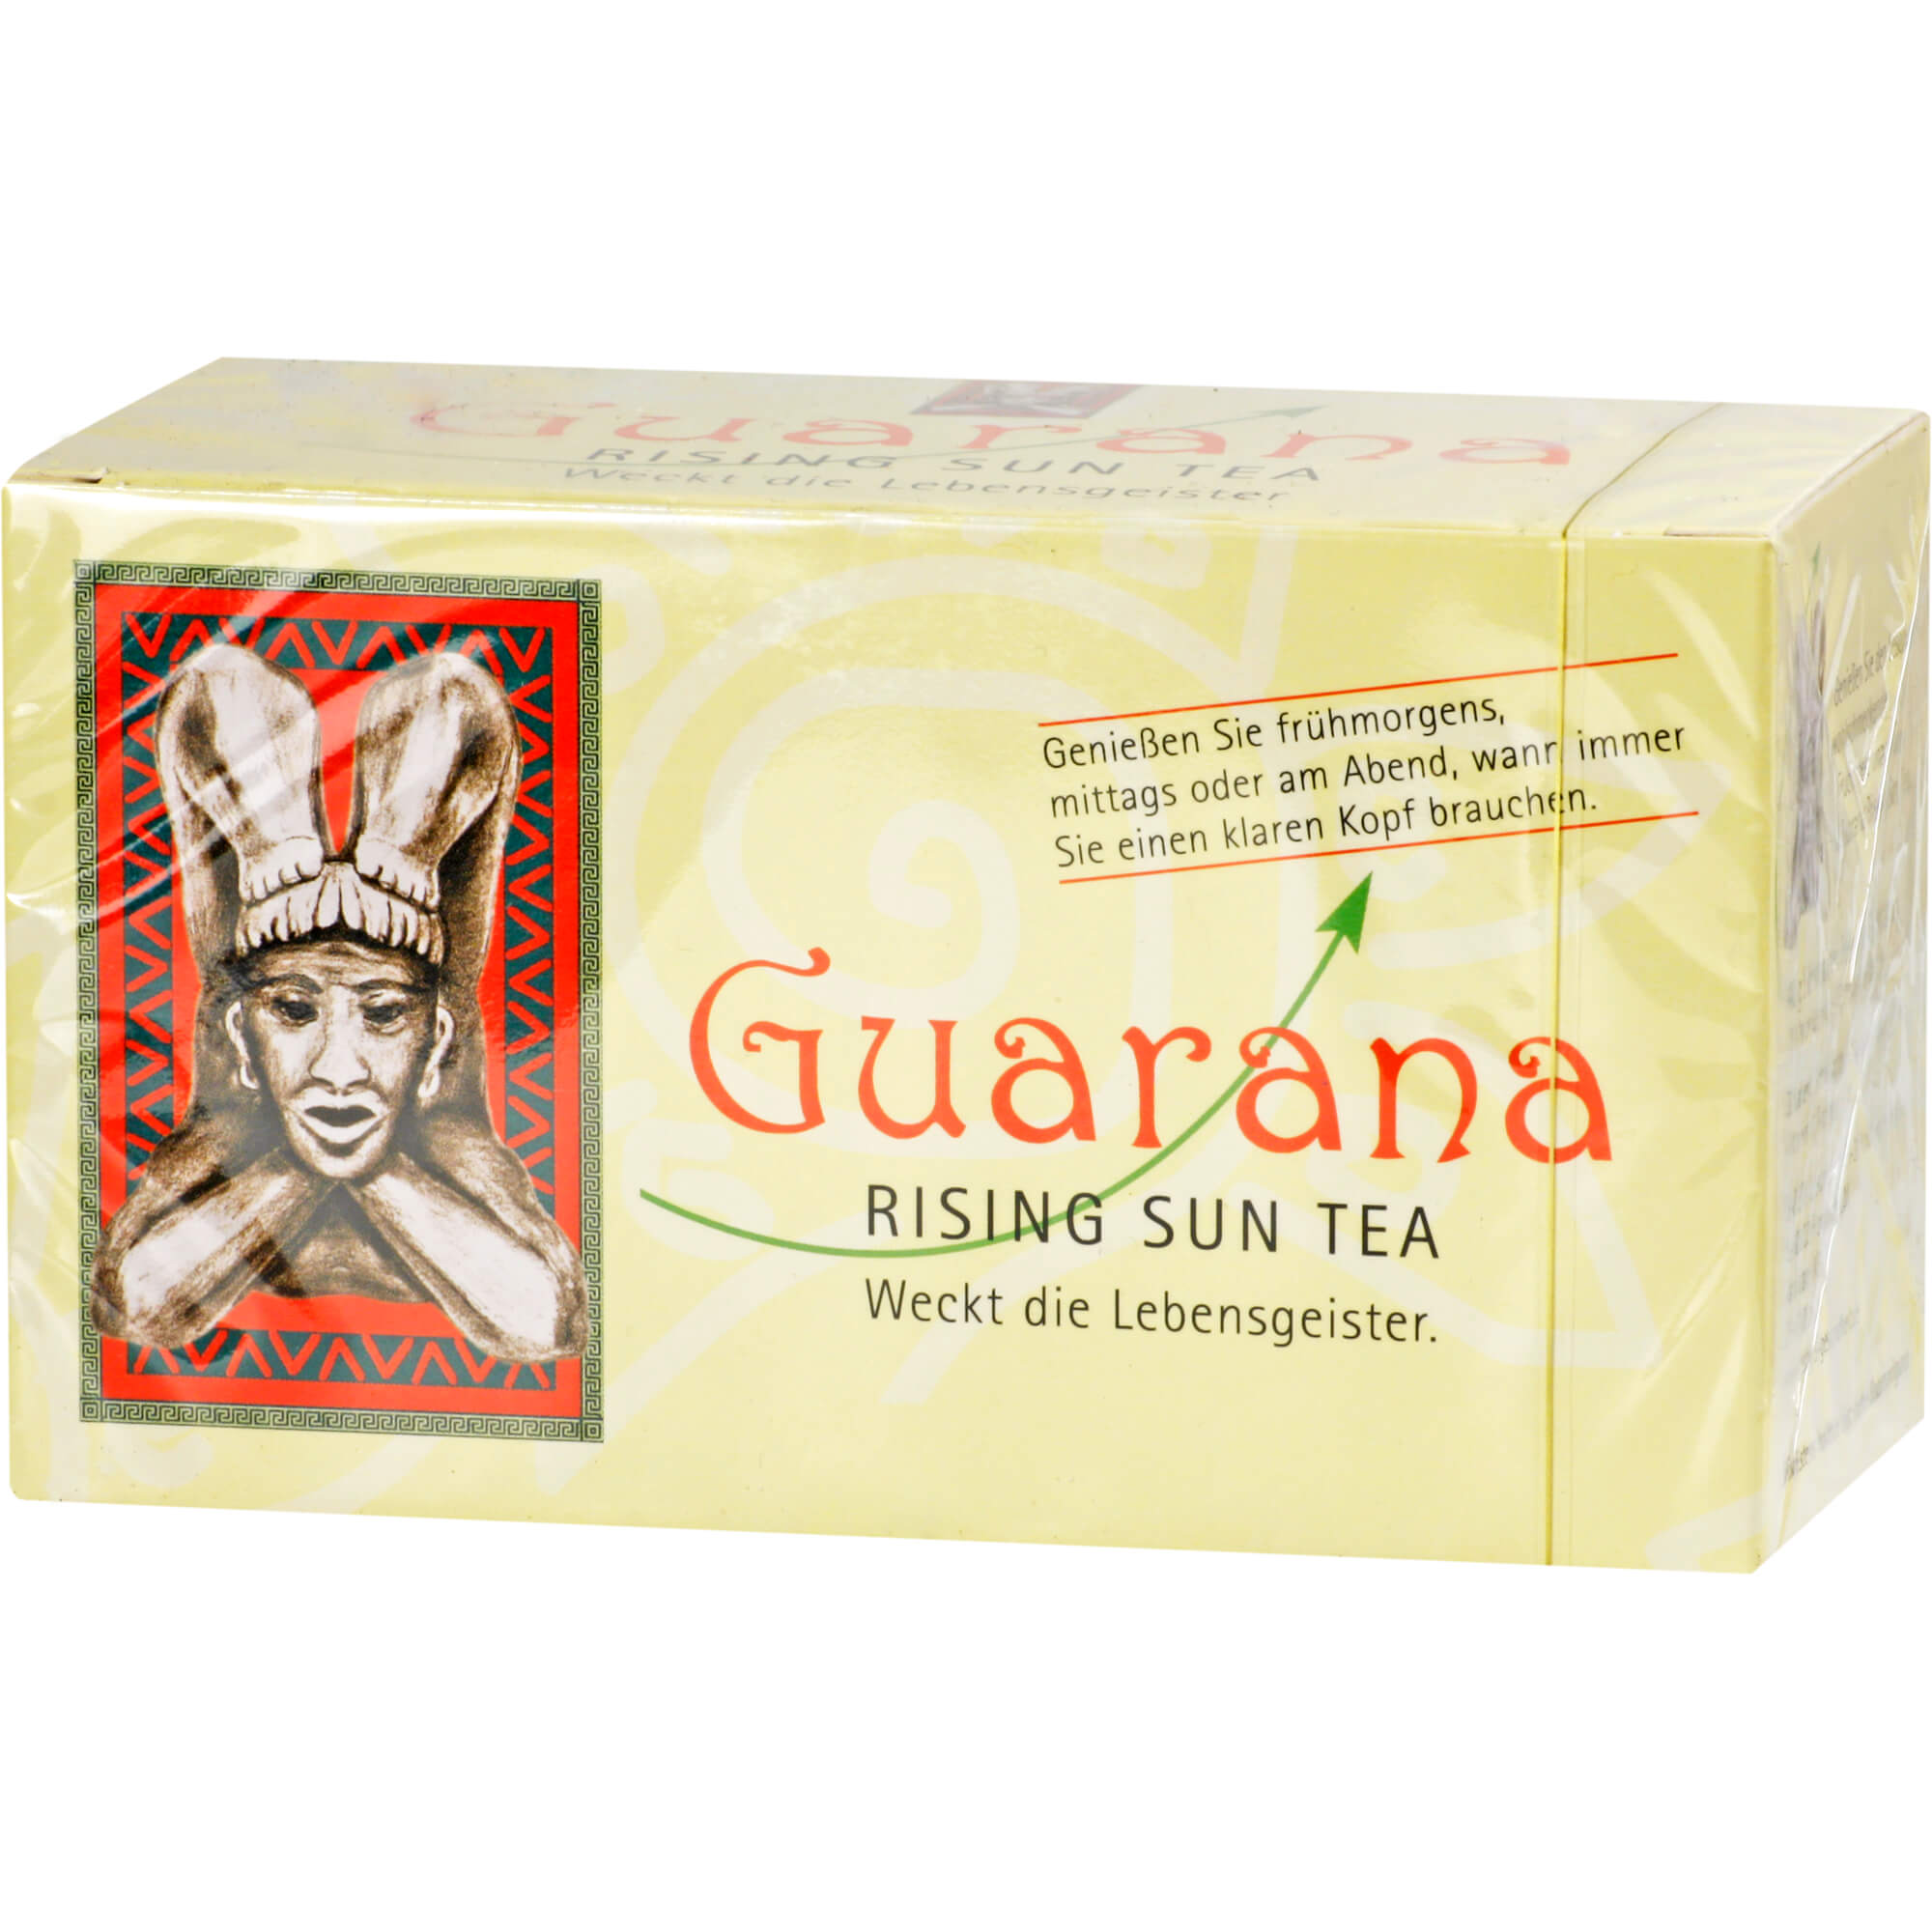 Guarana Rising Sun Tea Beutel.